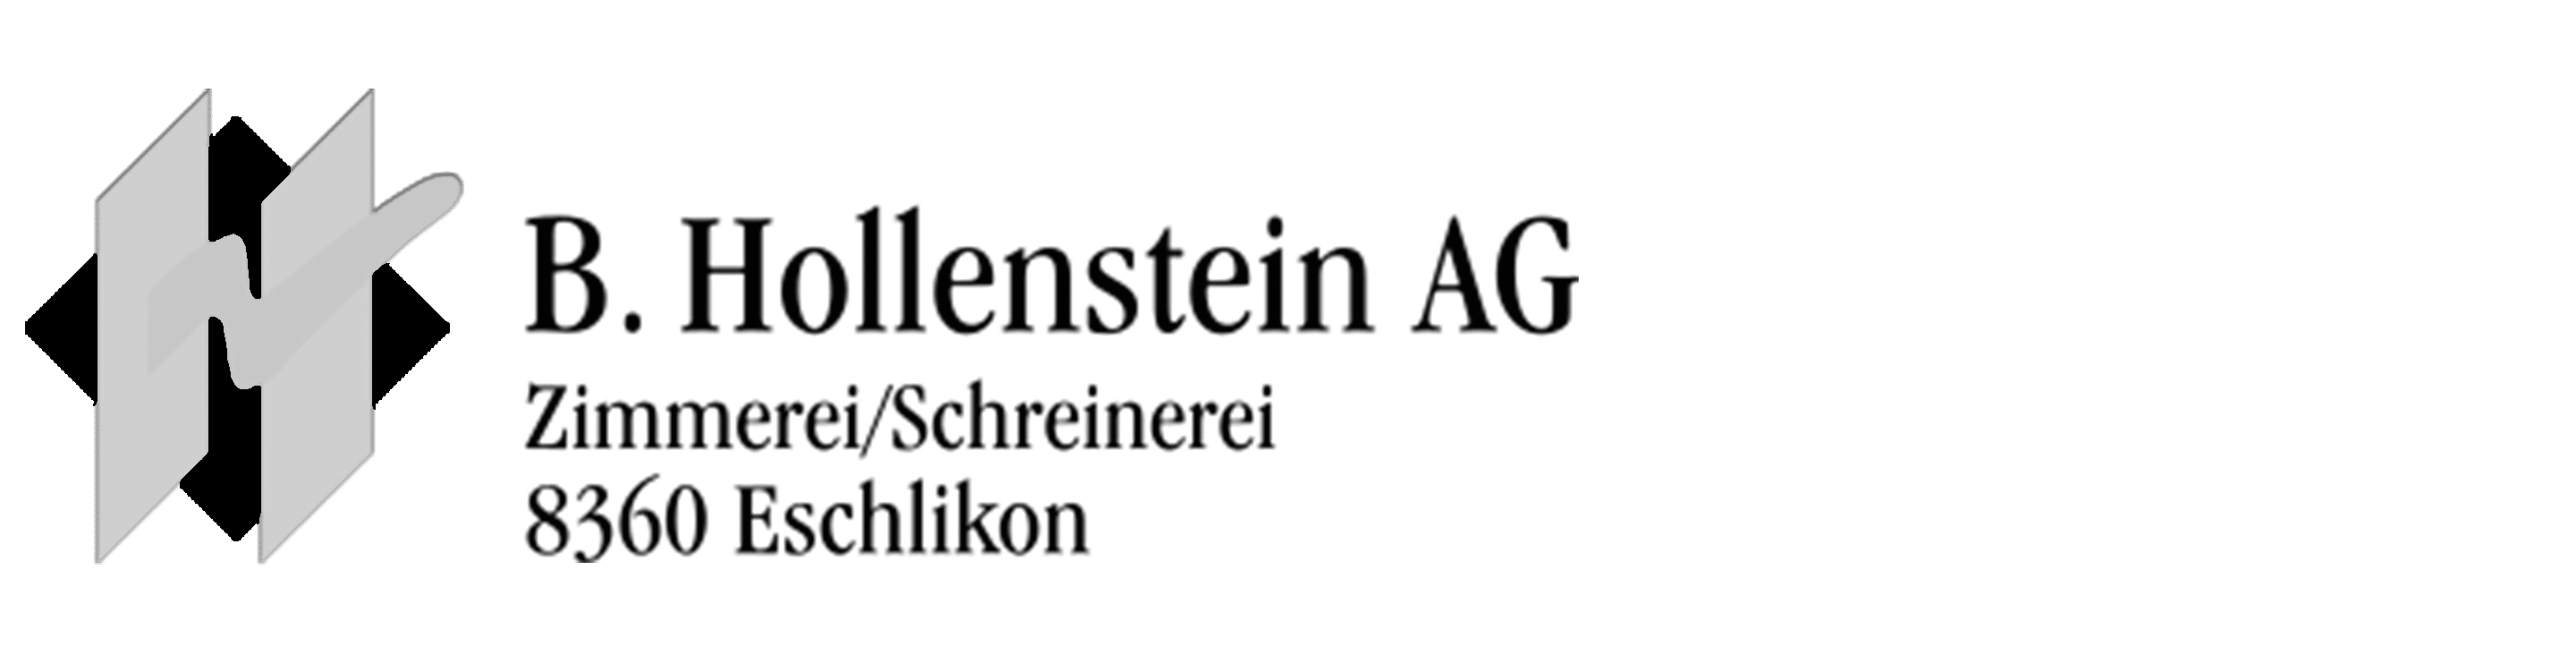 Logo Hollenstein 2